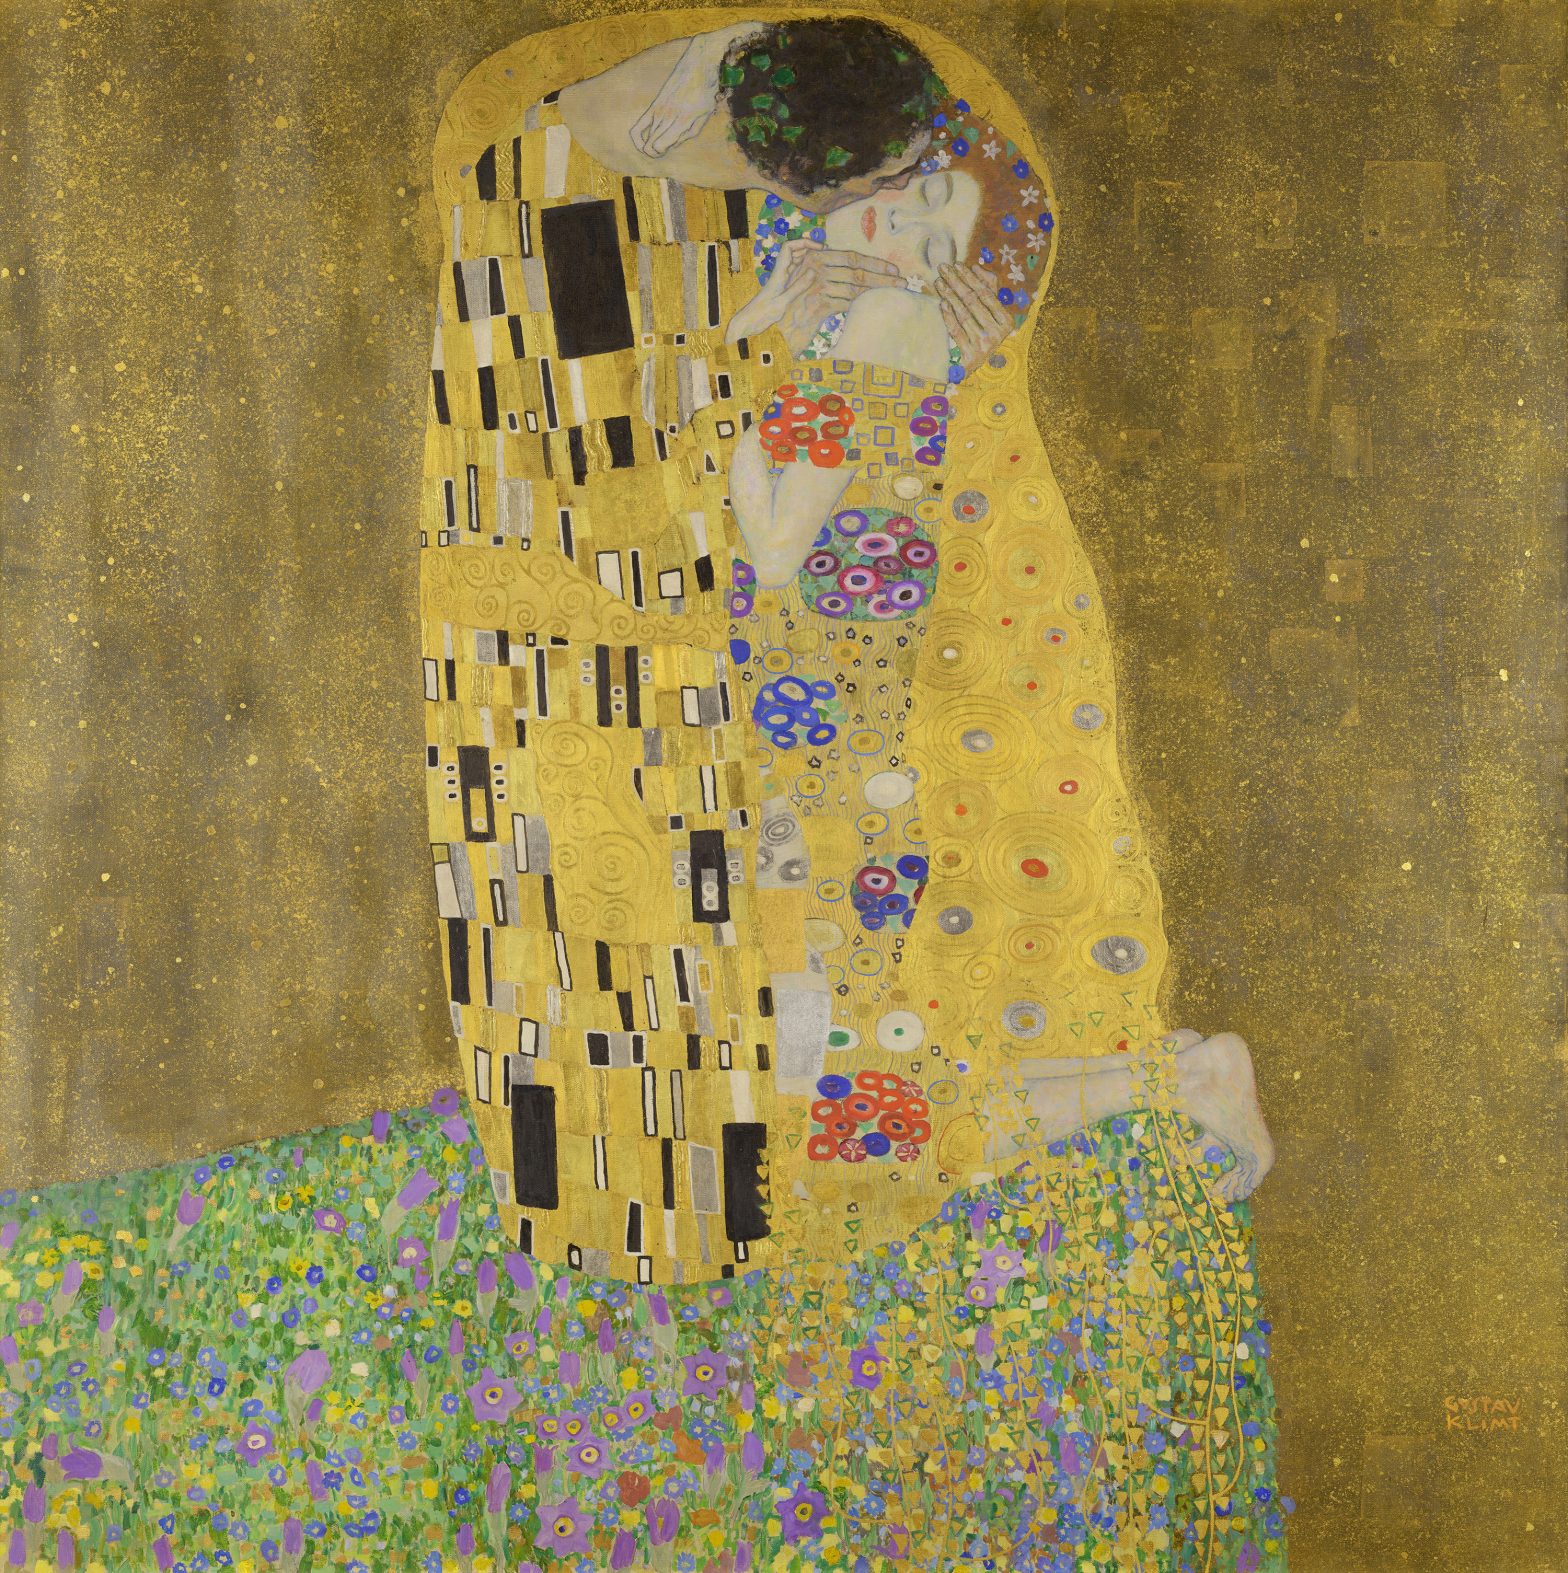 Biography: Gustav Klimt